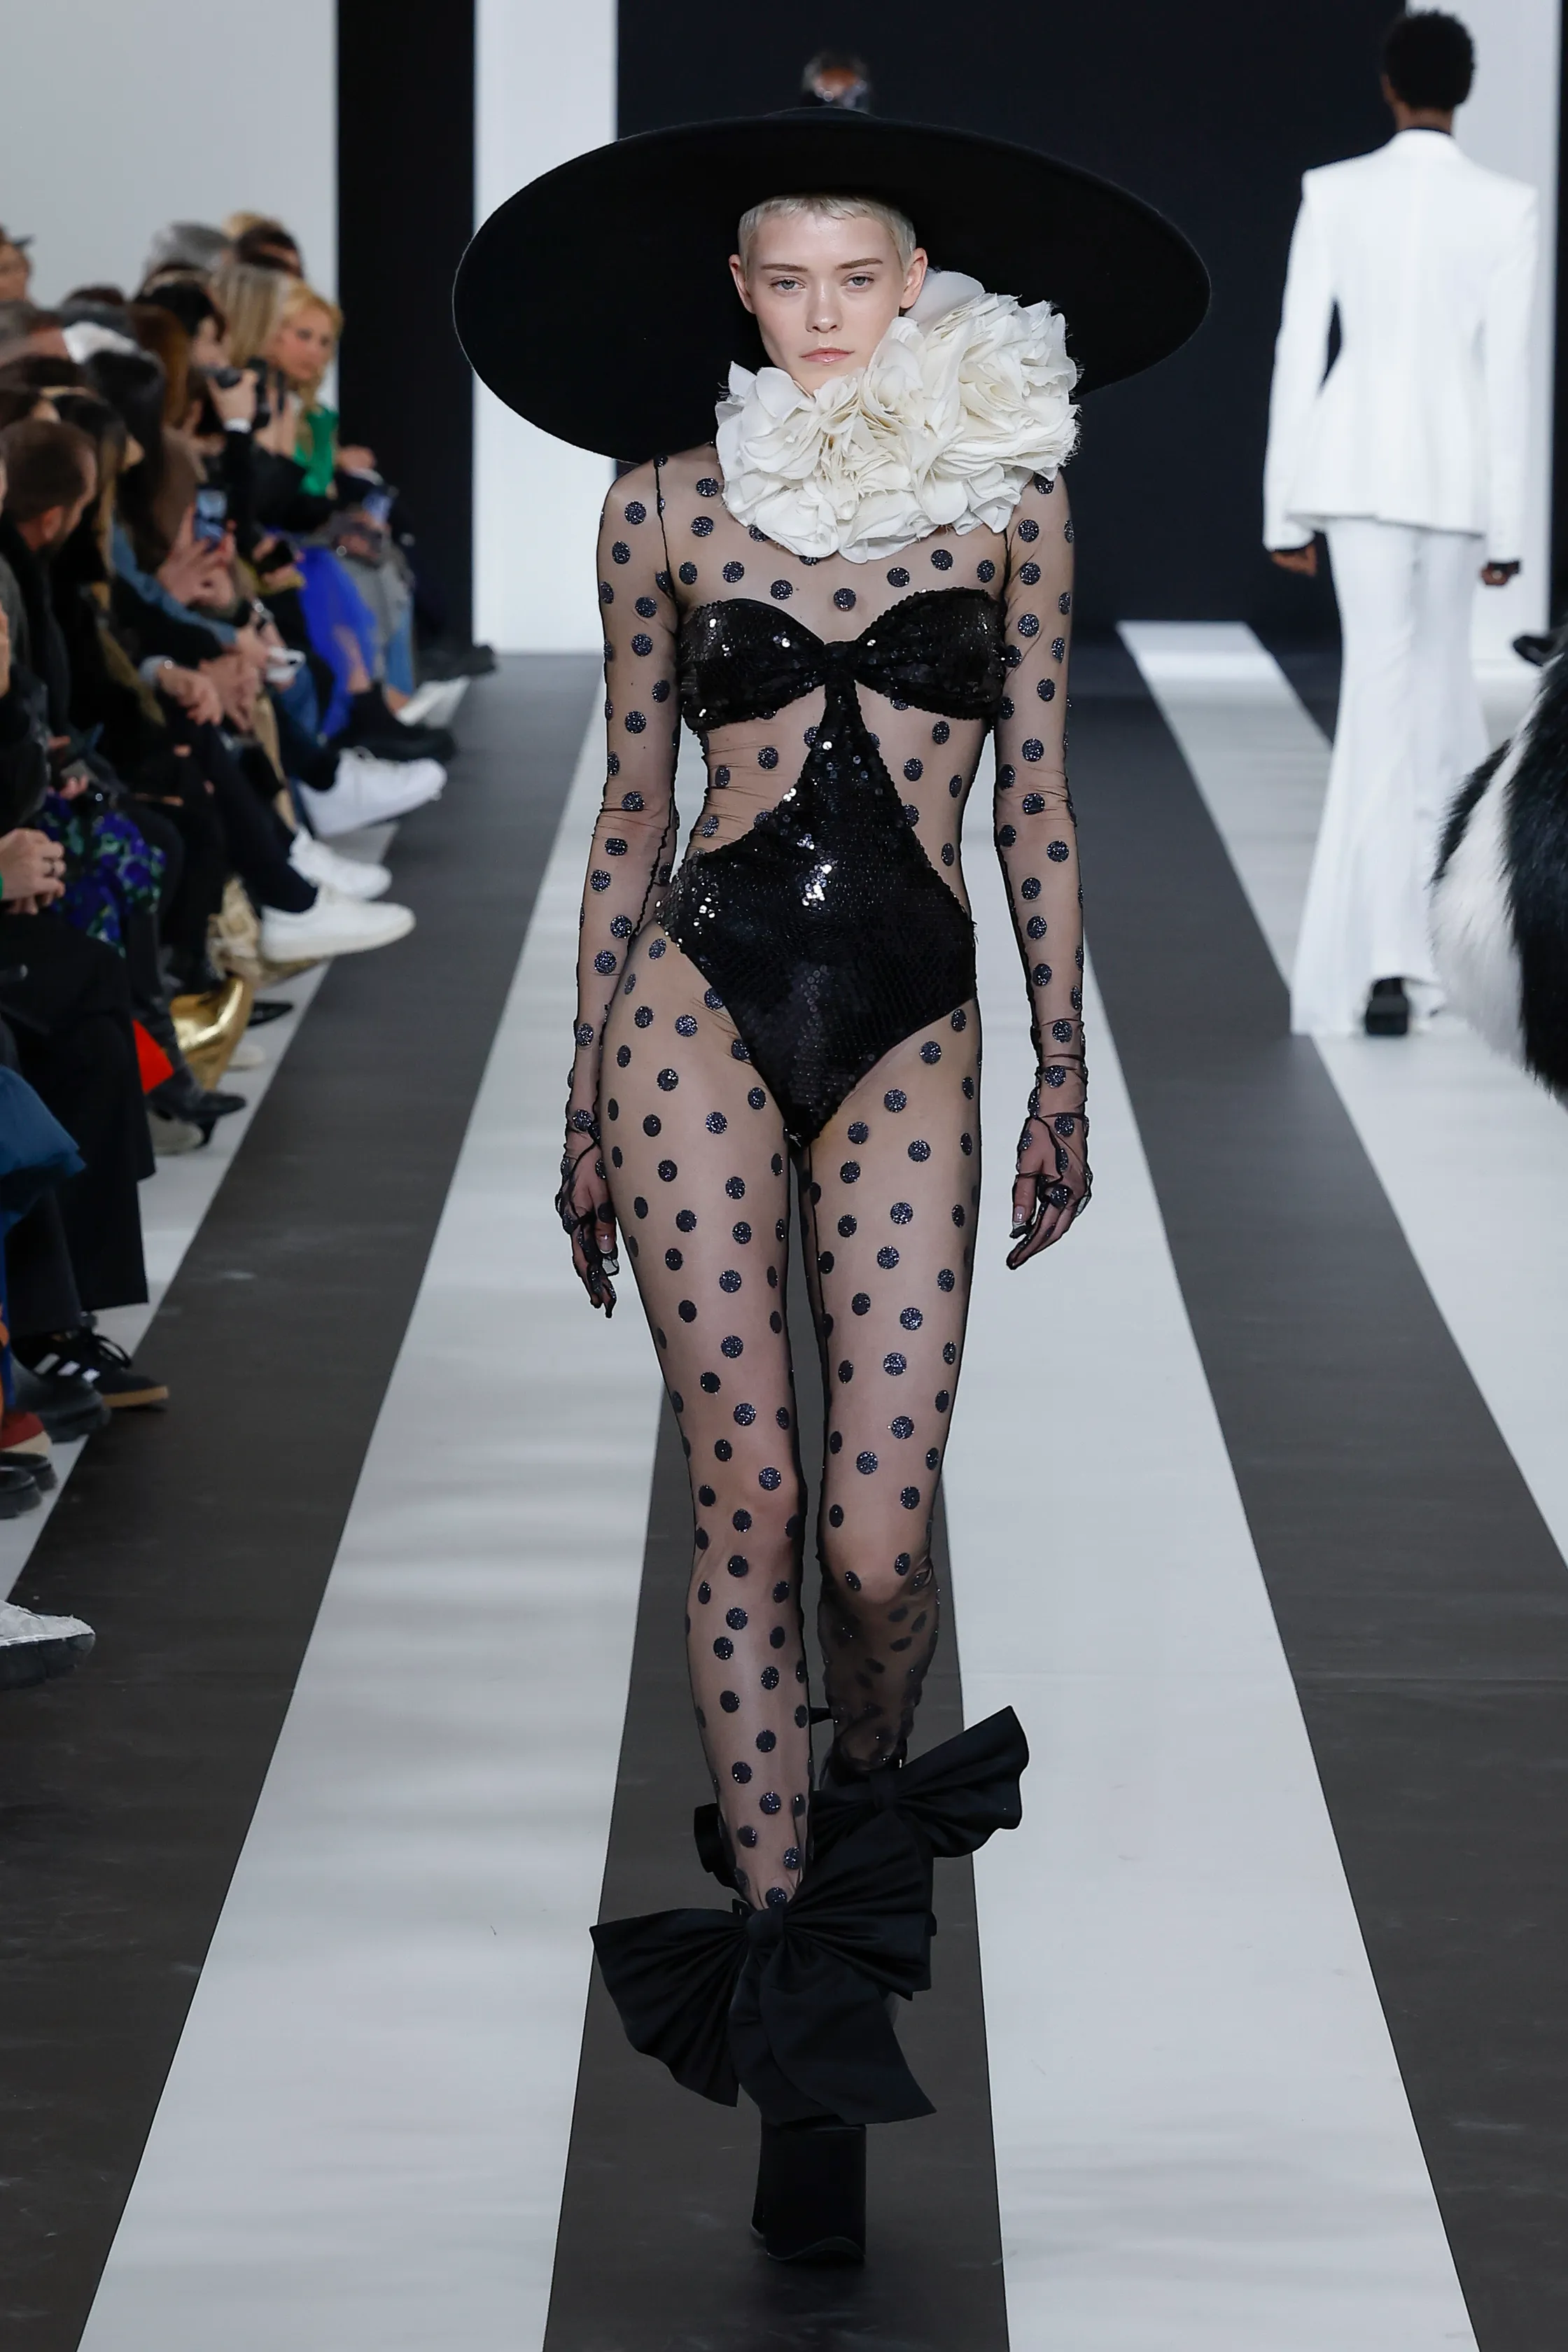 Платья-обманки, дебют Харриса Рида в <strong>Nina Ricci</strong> и роботы. Ключевые события пятого дня Недели моды в Париже